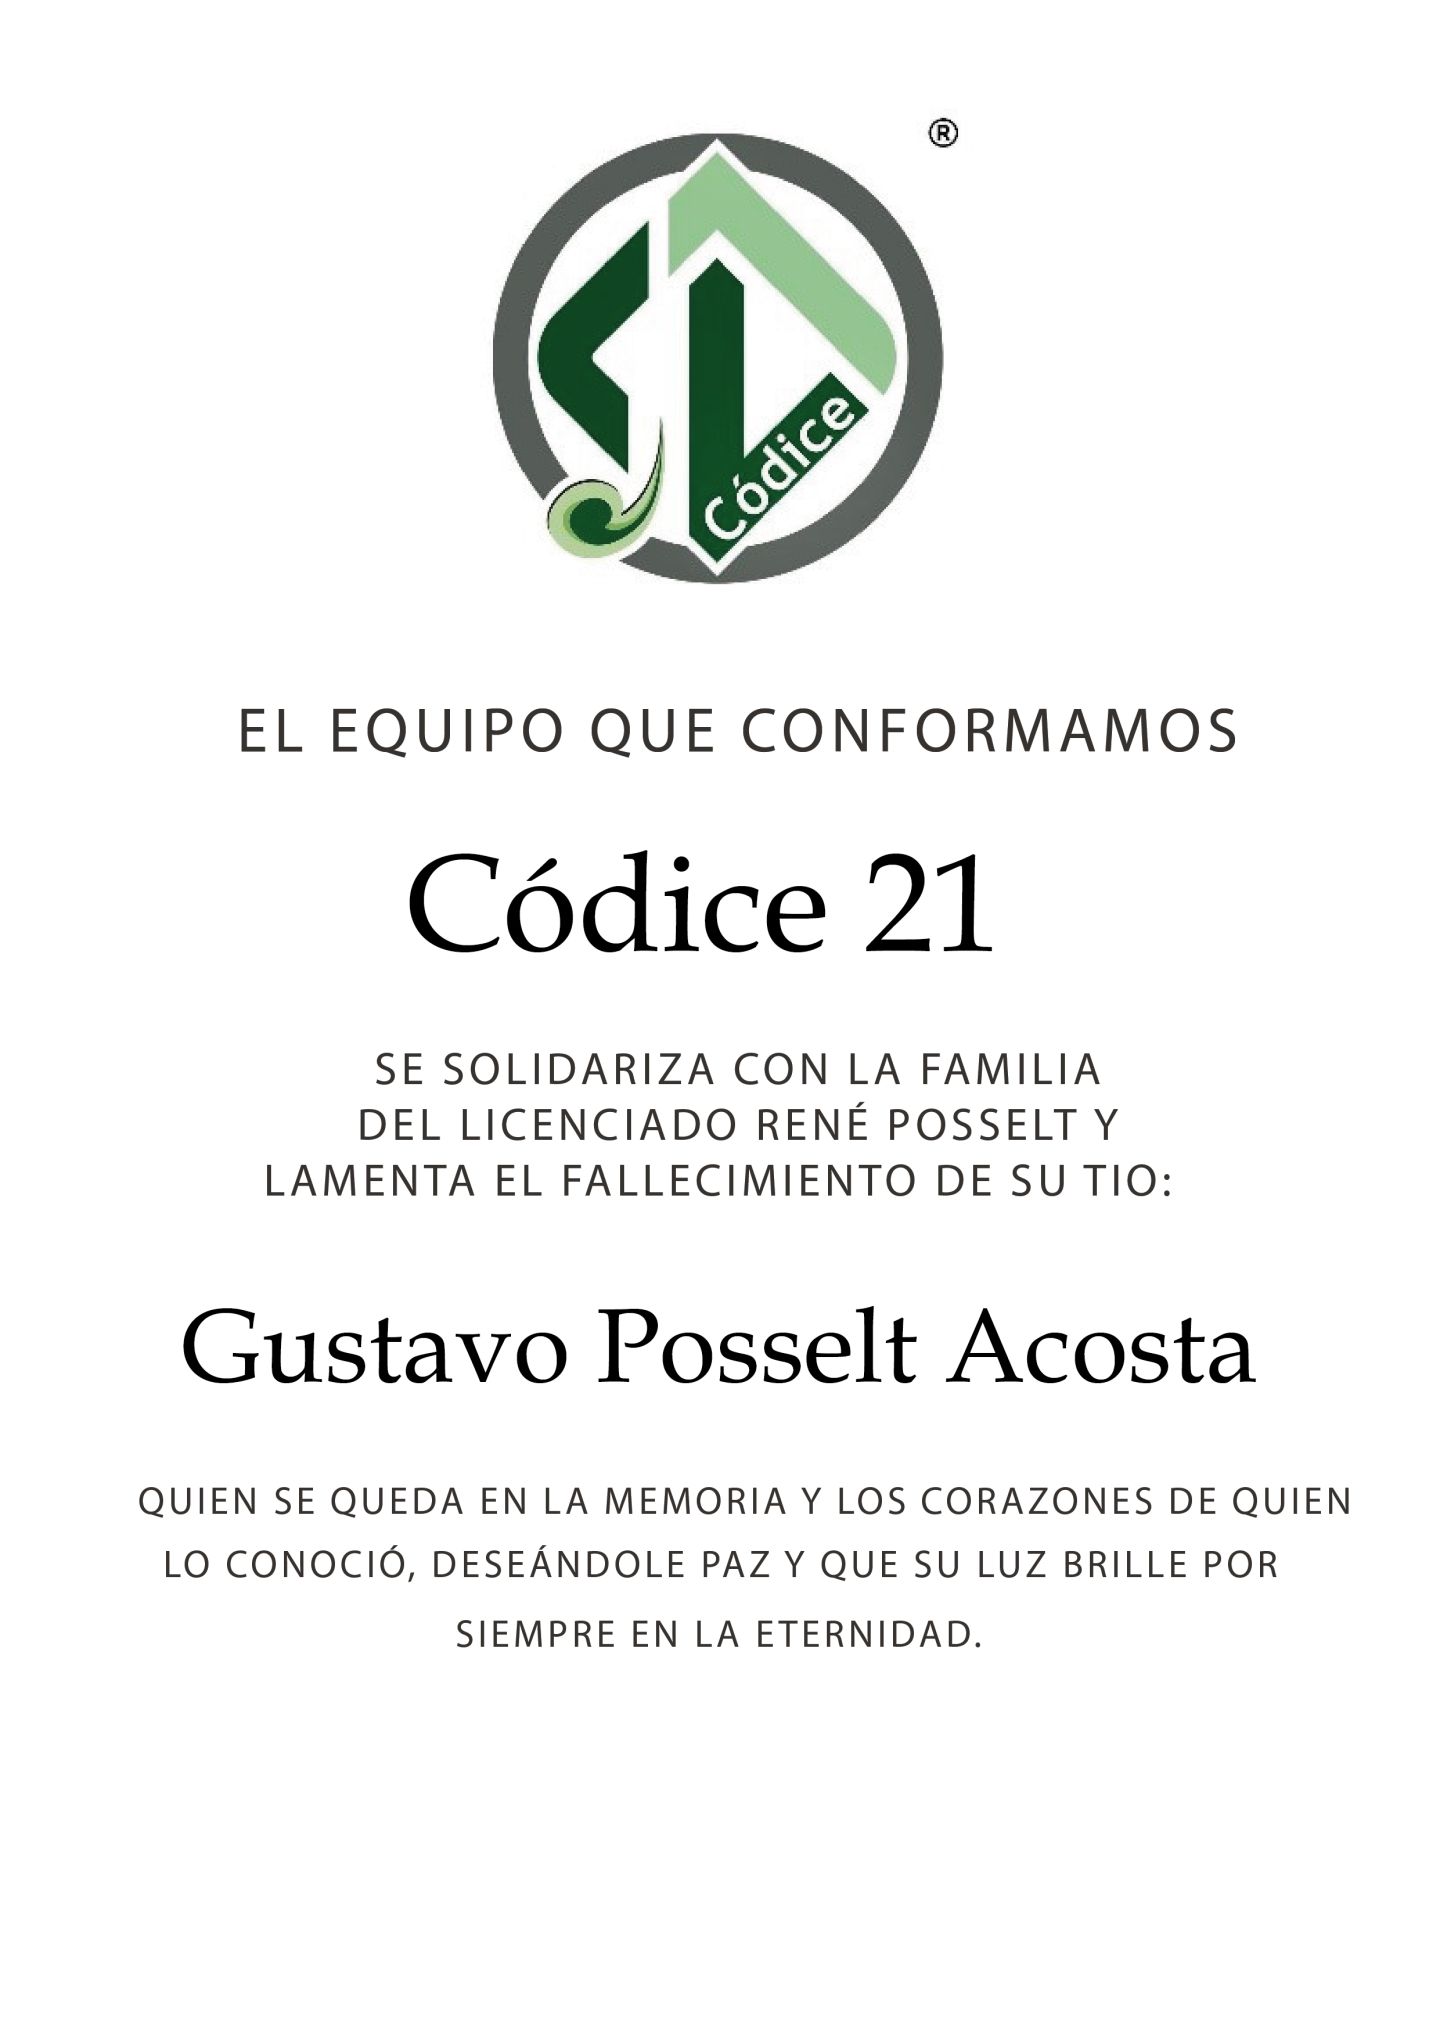 El equipo que conformamos Códice 21 se solidariza con la familia del licenciado René Posselt y lamenta el fallecimiento de su tio Gustavo Posselt Acosta